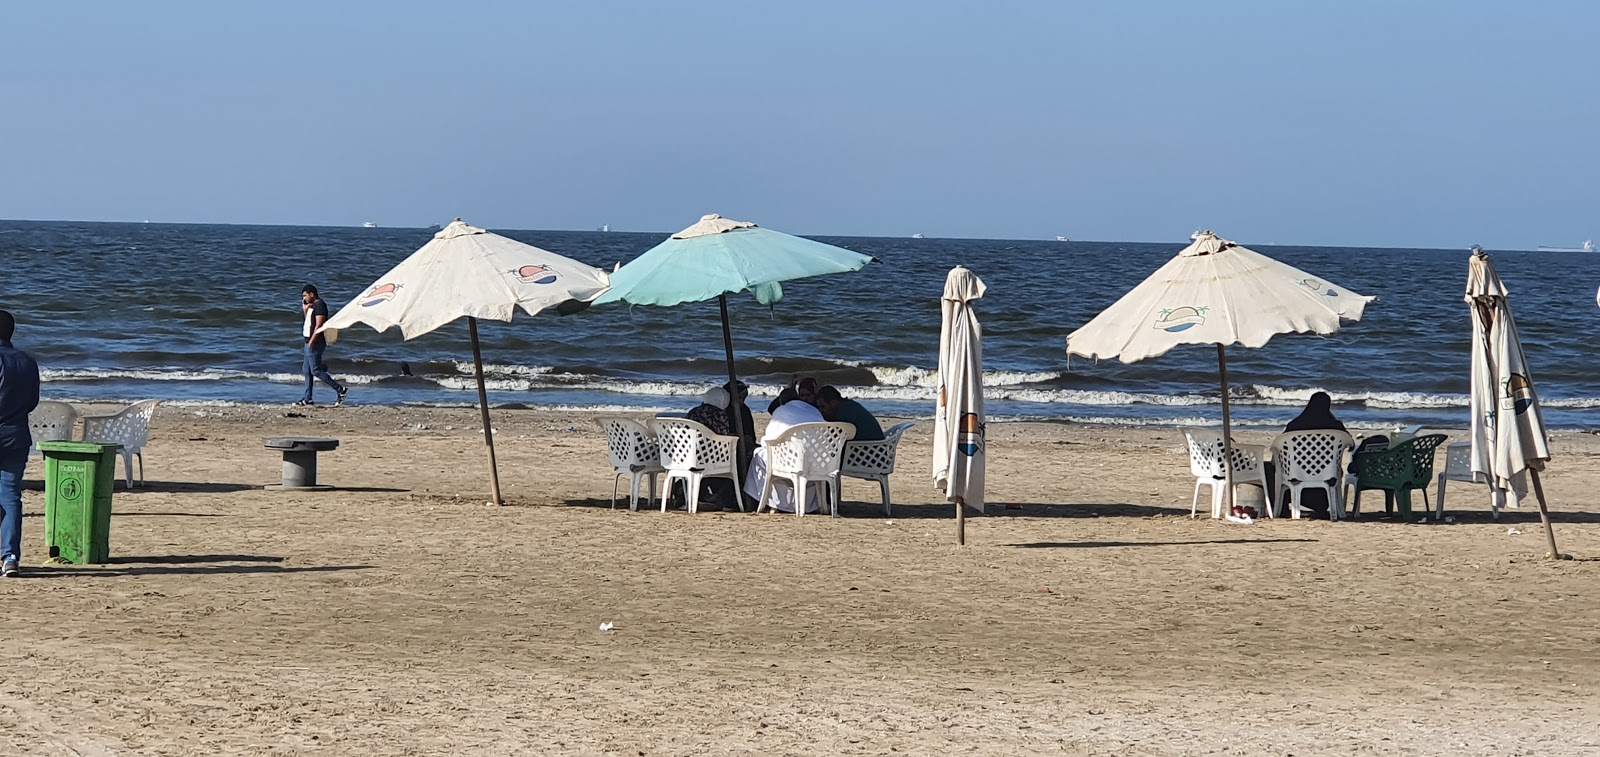 Foto van El Fayrouz Village Beach met gemiddeld niveau van netheid